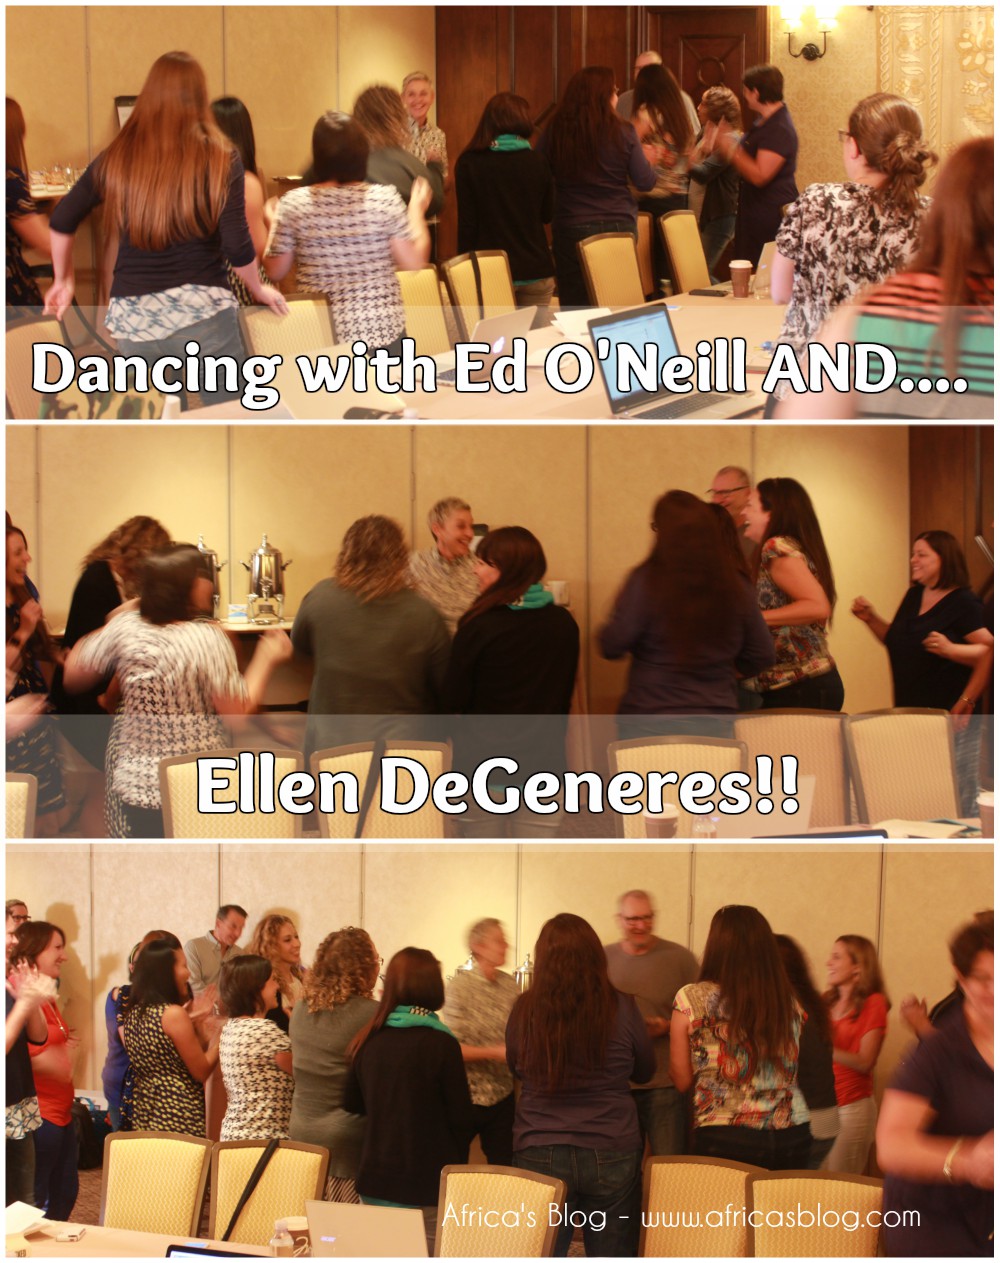 Finding Dory Press Junket - Dancing with Ellen! #FindingDoryEvent